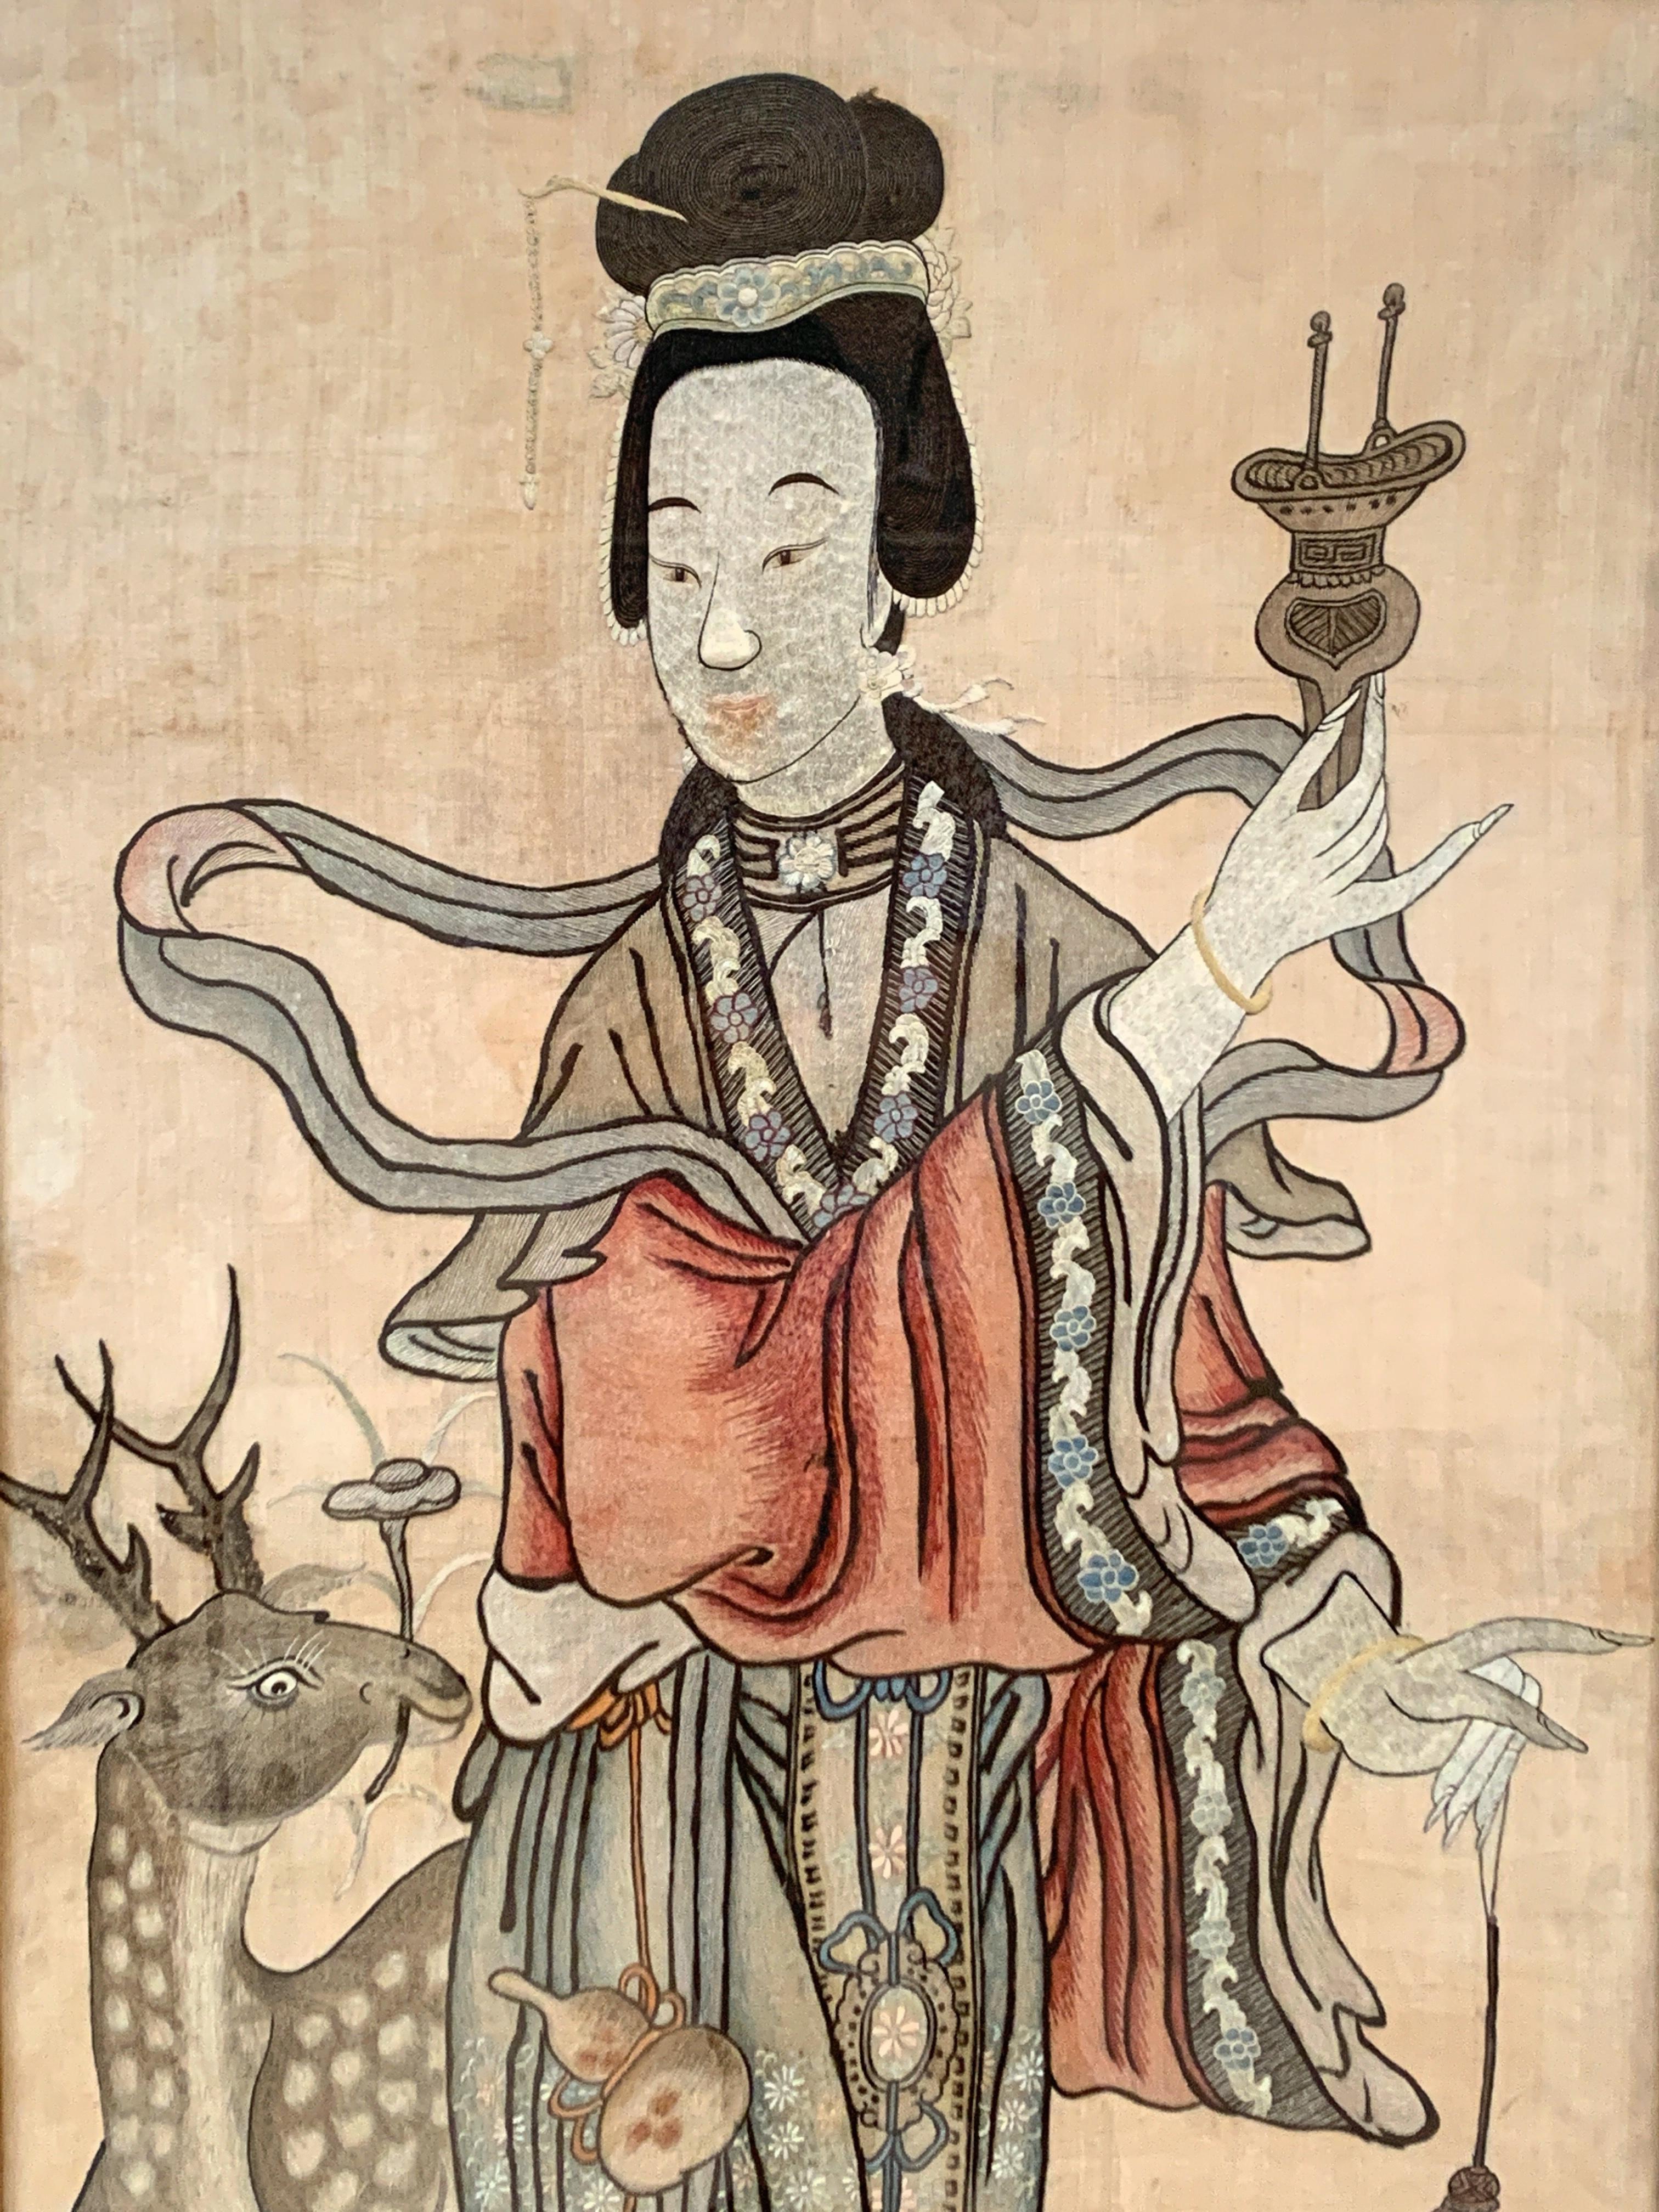 Ein großer gerahmter und glasierter, seidenbestickter Wandteppich aus der chinesischen Qing-Dynastie mit einer weiblichen Unsterblichen, wahrscheinlich Magu, spätes 19. Jahrhundert, China.

Die große chinesische Seidentafel ist wunderschön mit